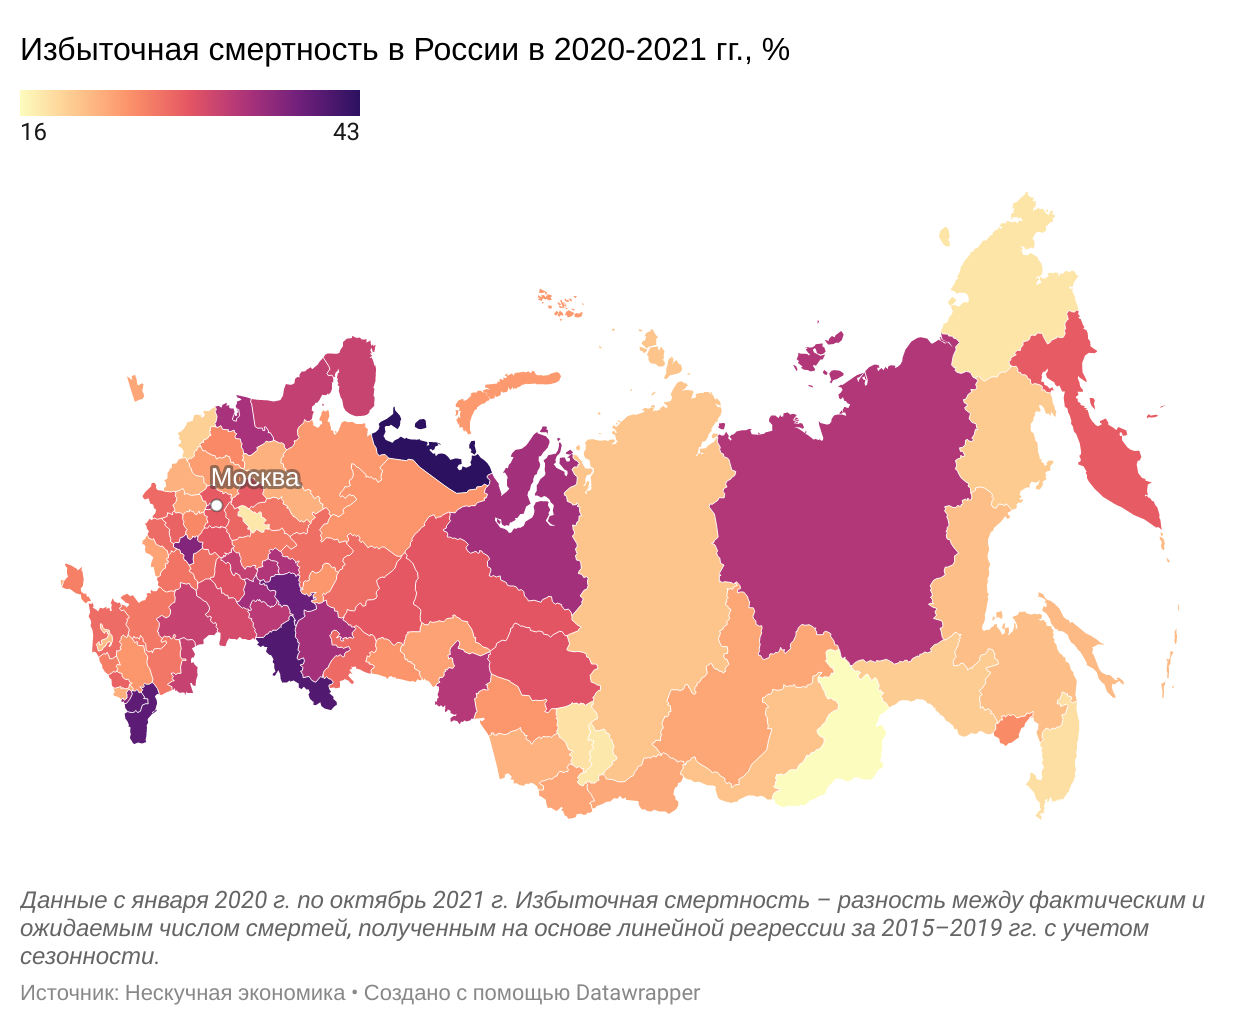 Причины убыли населения в россии. Смертность населения в России. Смертность в России в 2020 году. Избыточная смертность в России 2021. Смертность в России в 2021 году.